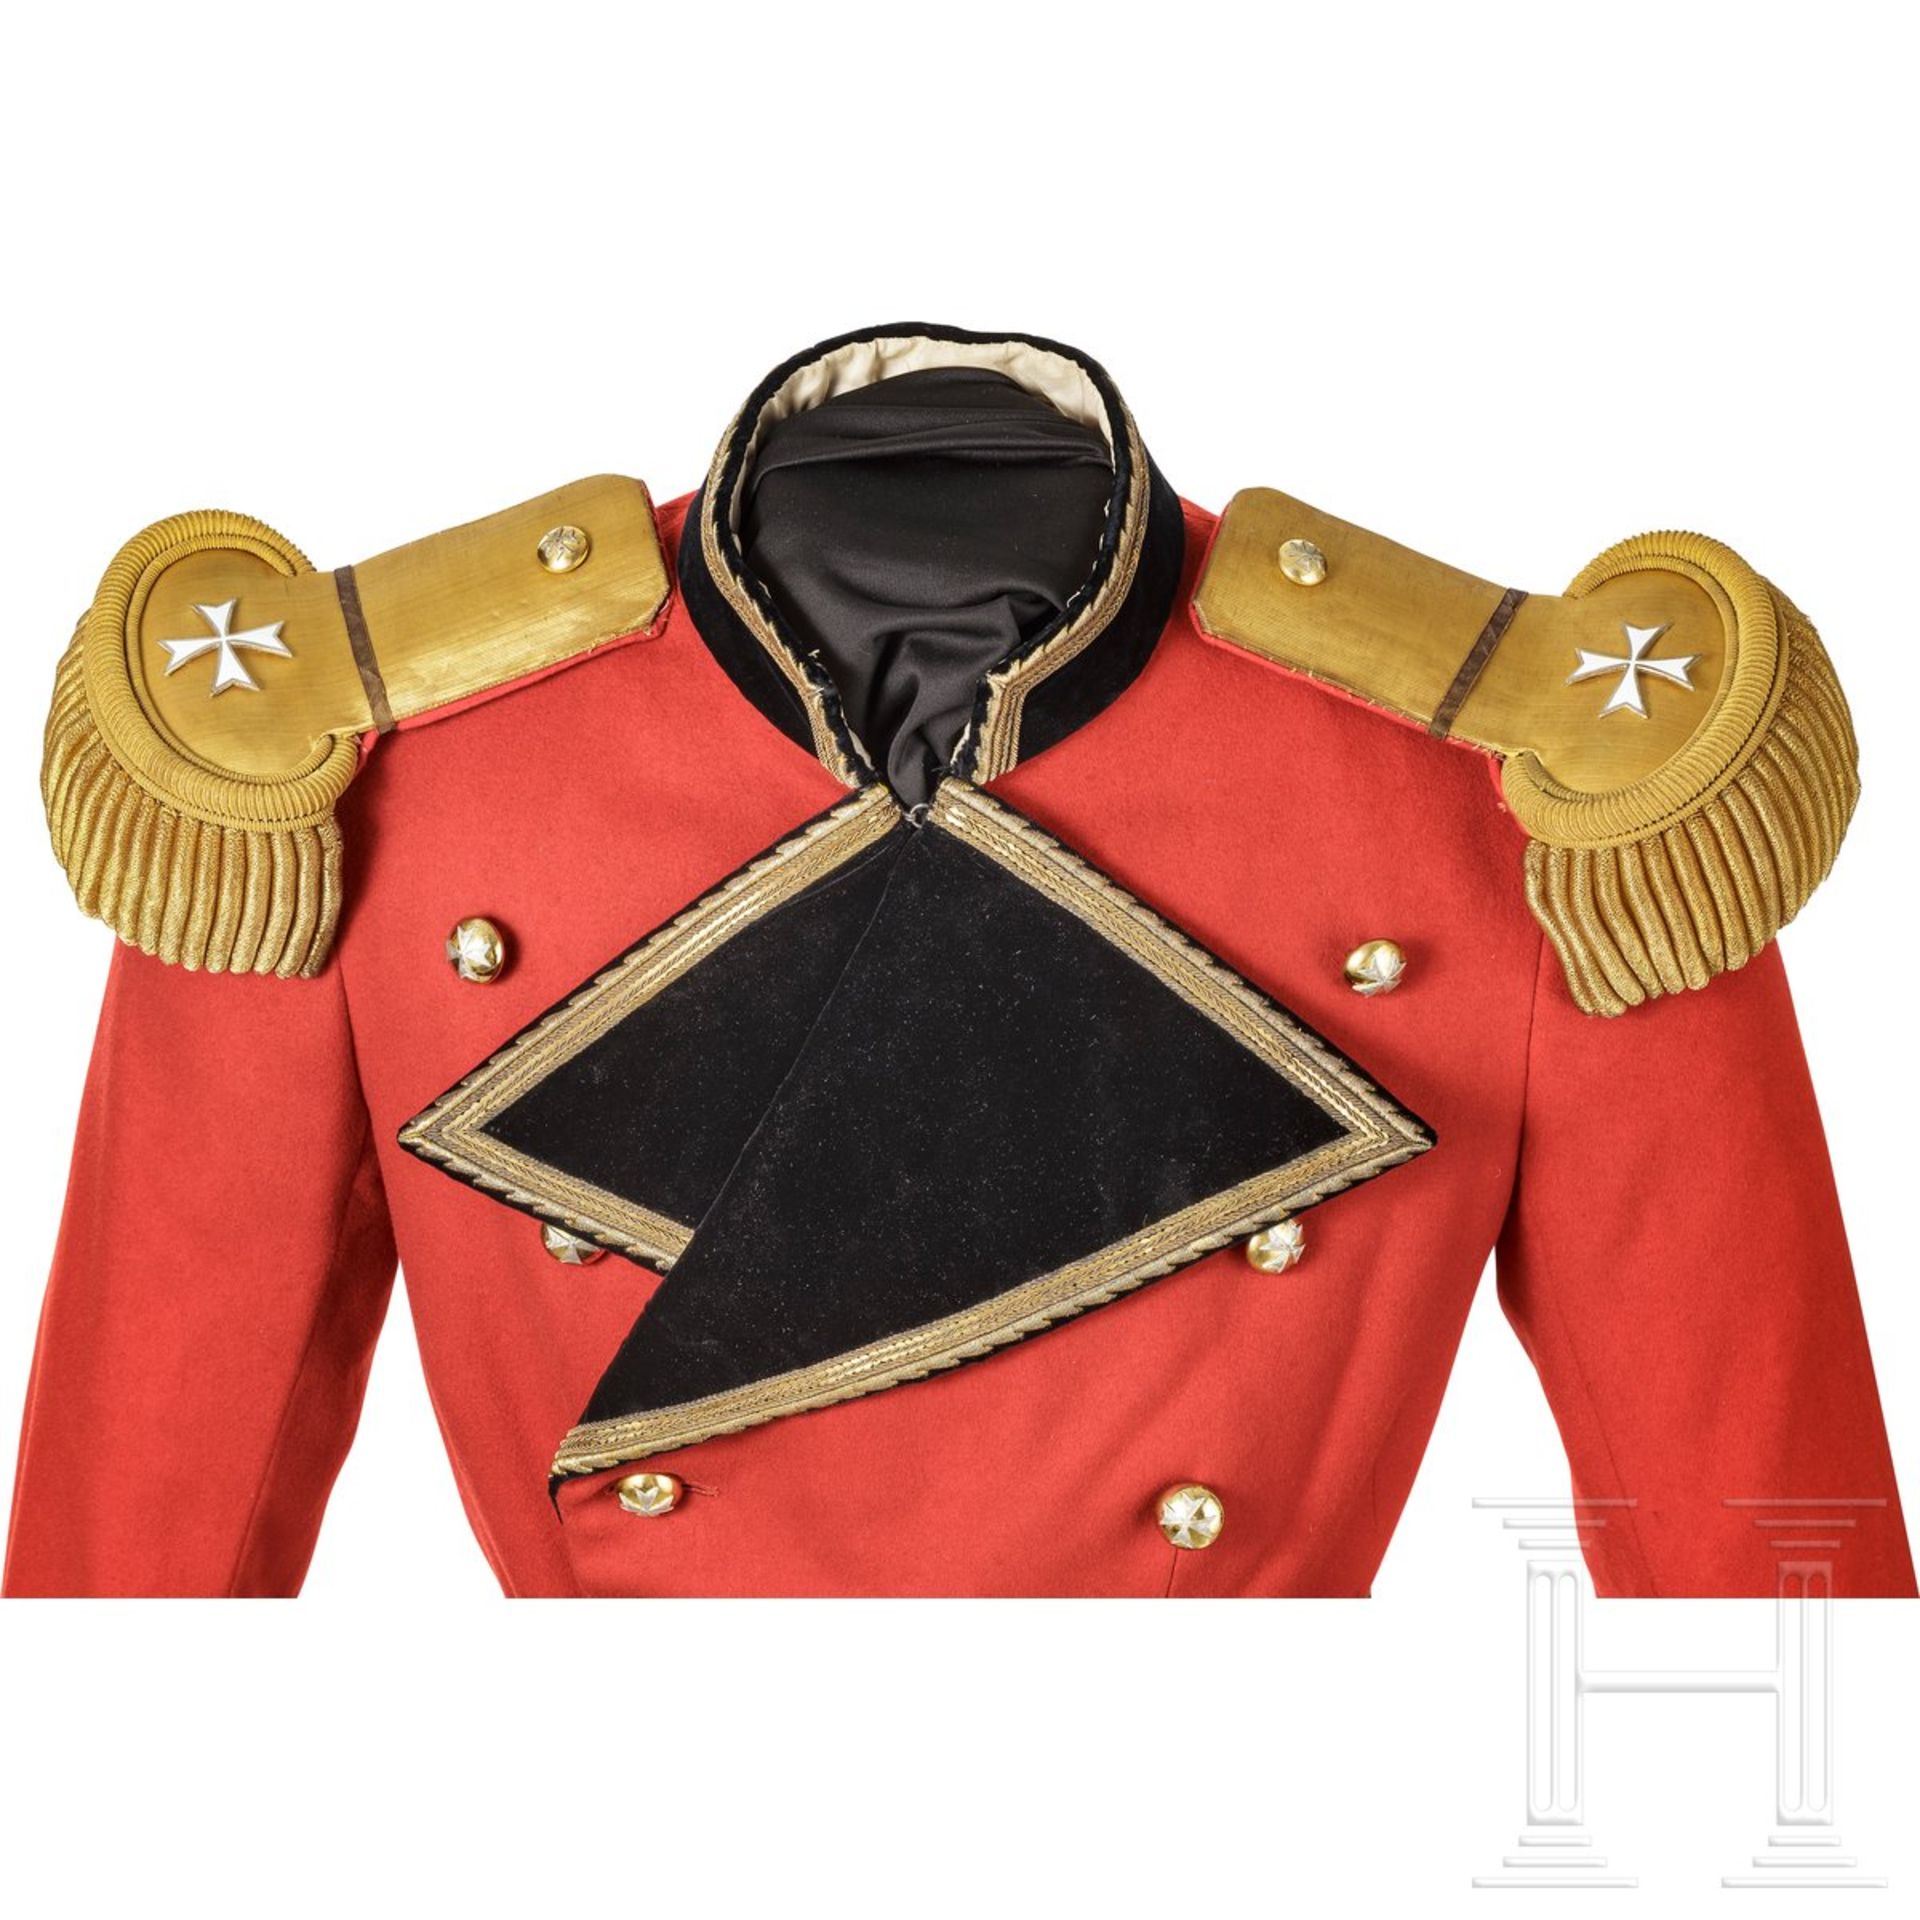 Uniformensemble eines Angehörigen des Souveränen Malteserordens, 20. Jhdt. - Bild 3 aus 5